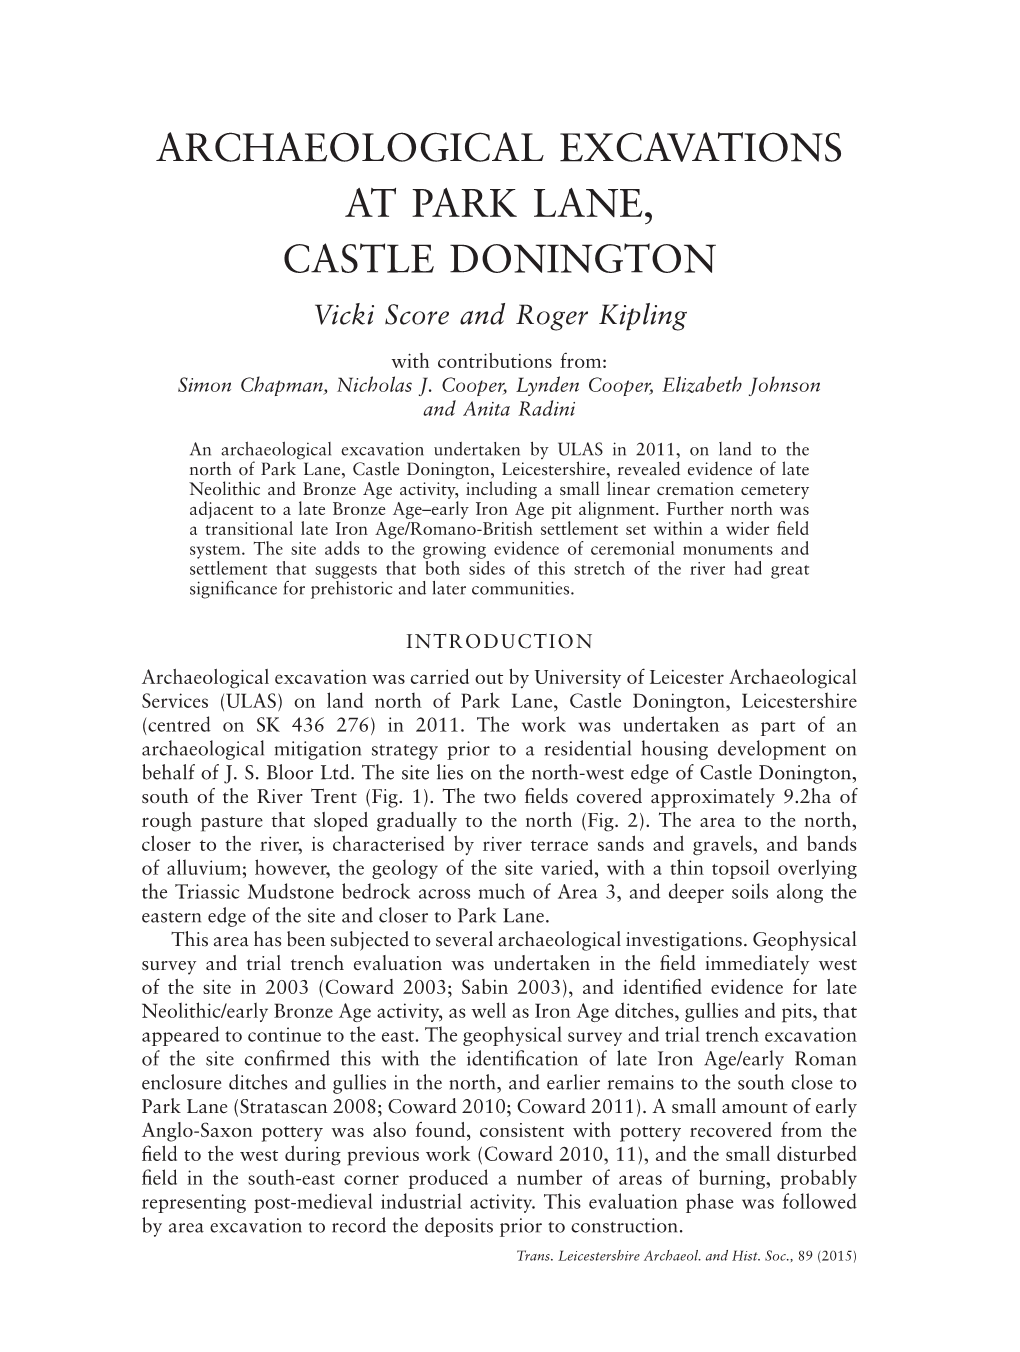 ARCHAEOLOGICAL EXCAVATIONS at PARK LANE, CASTLE DONINGTON Vicki Score and Roger Kipling